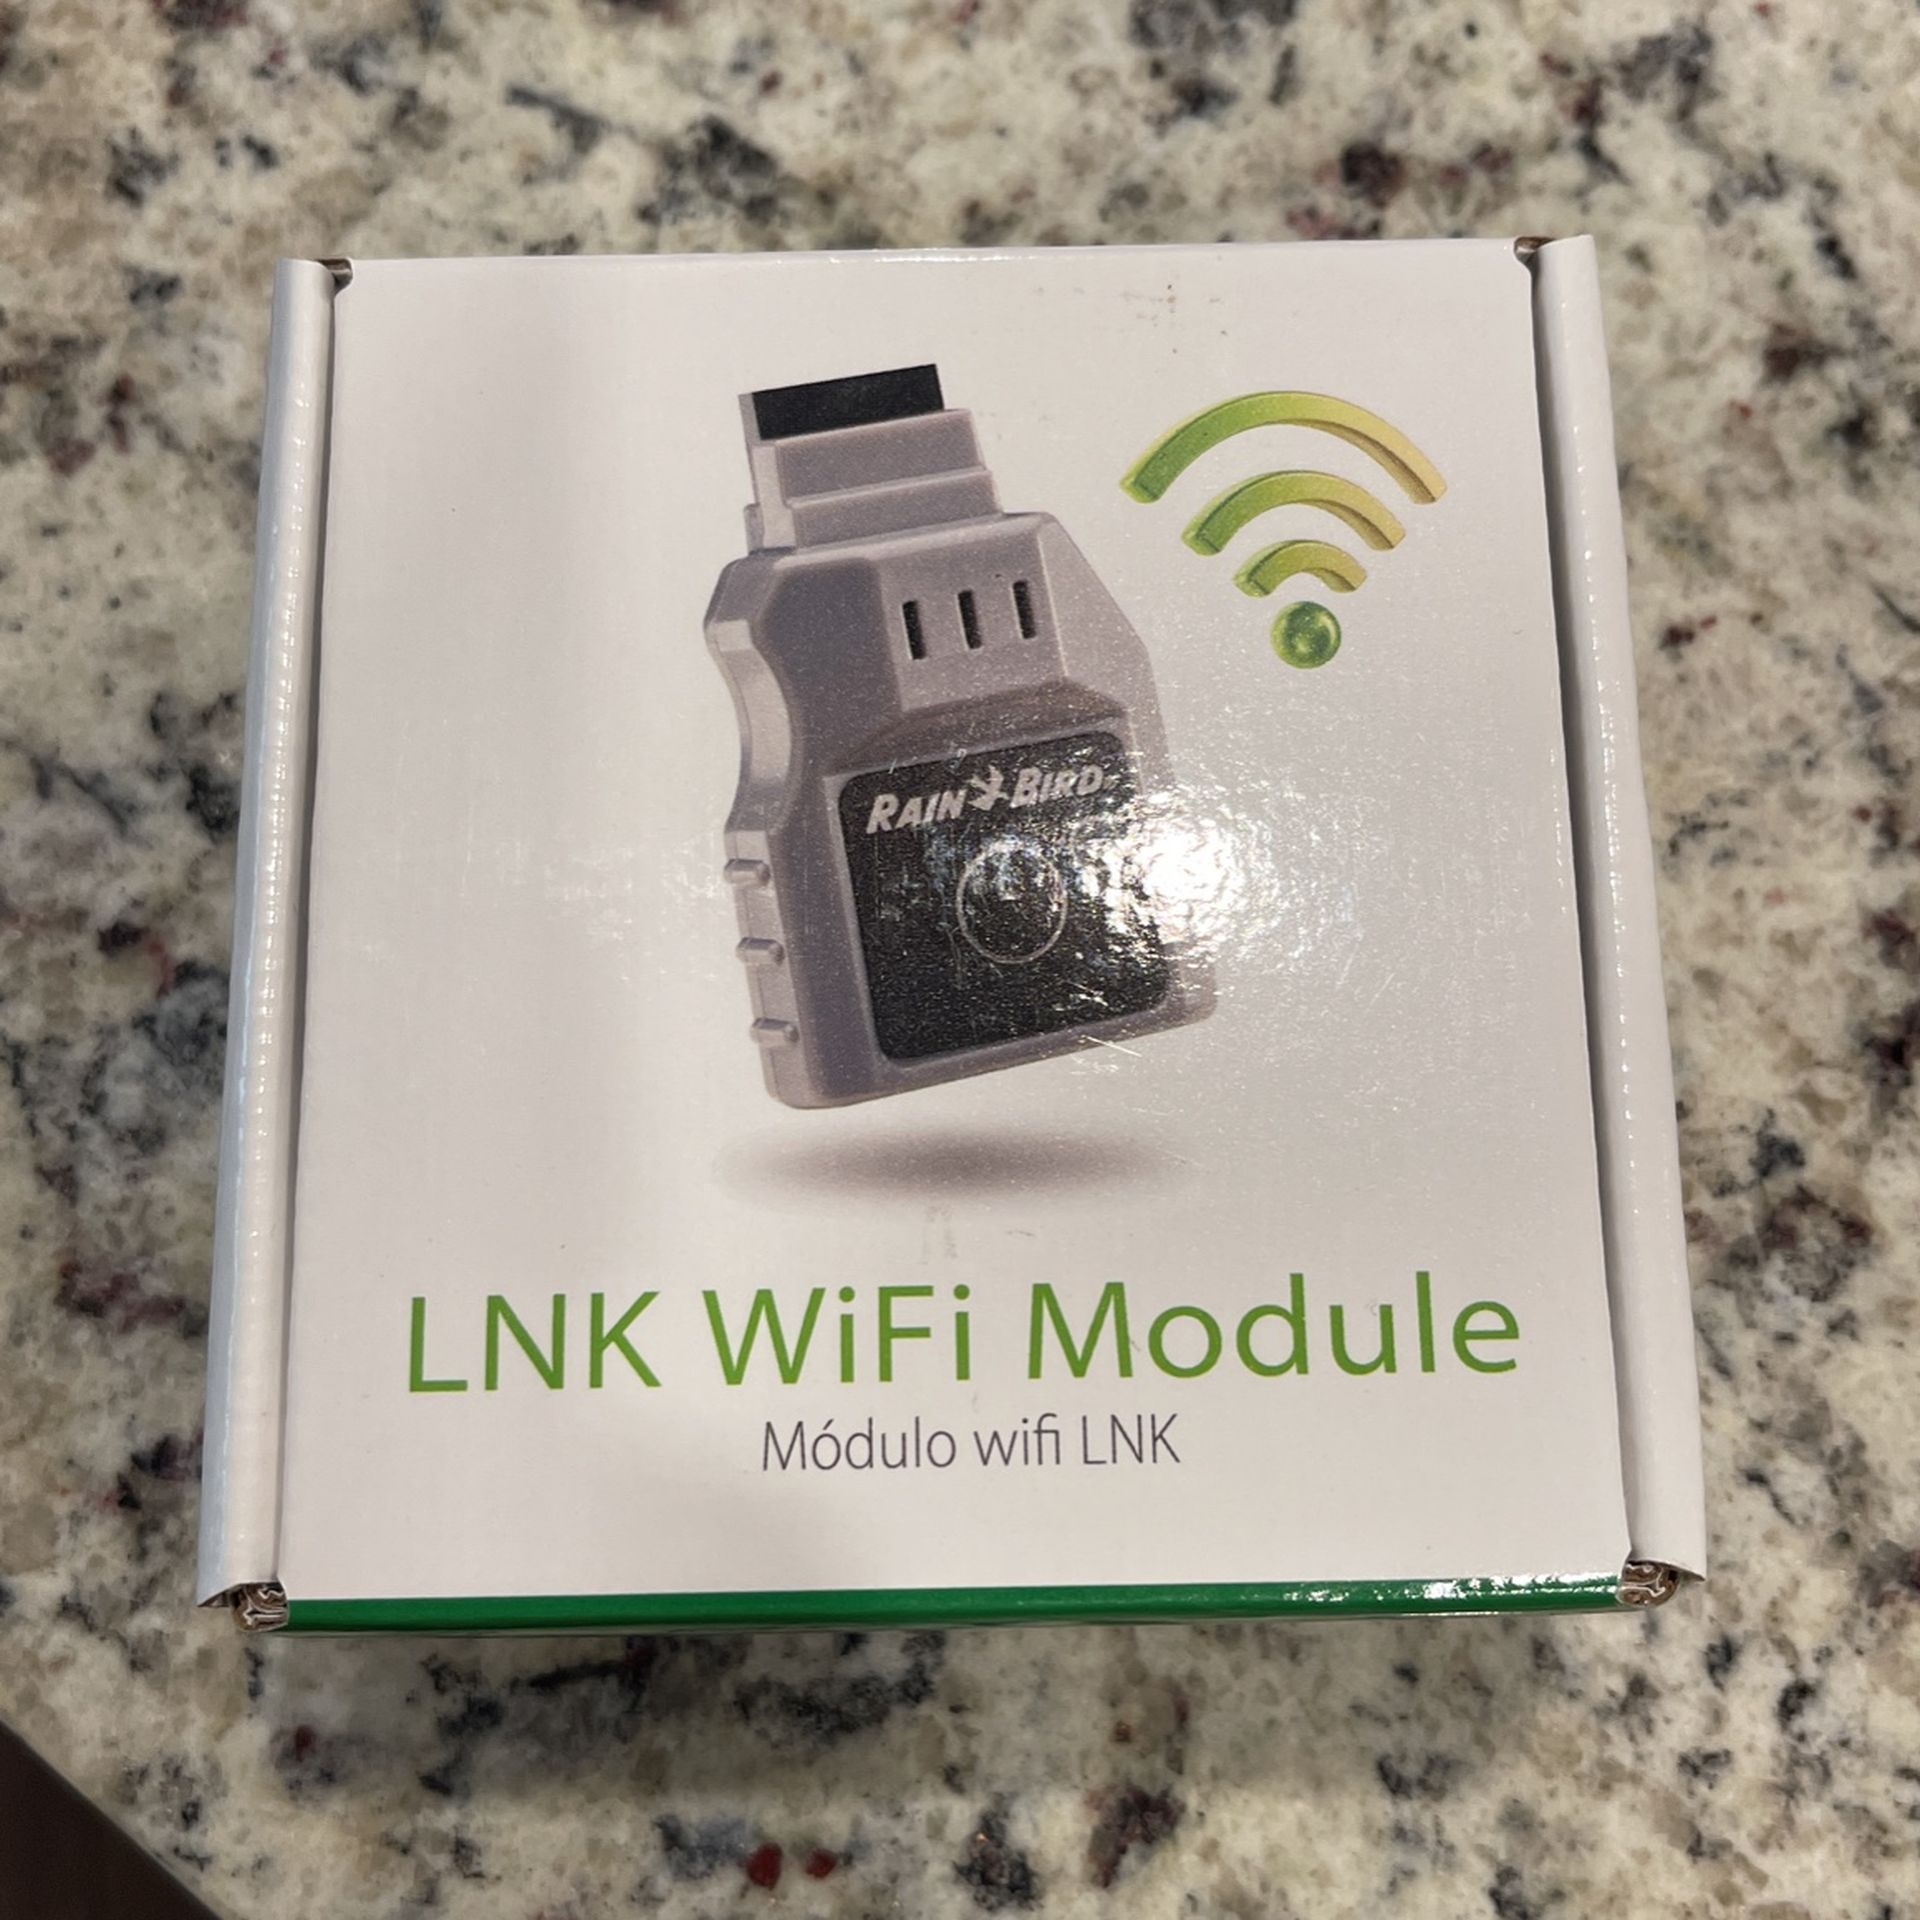 Rain bird LNK Wi-Fi module(Sprinkler)